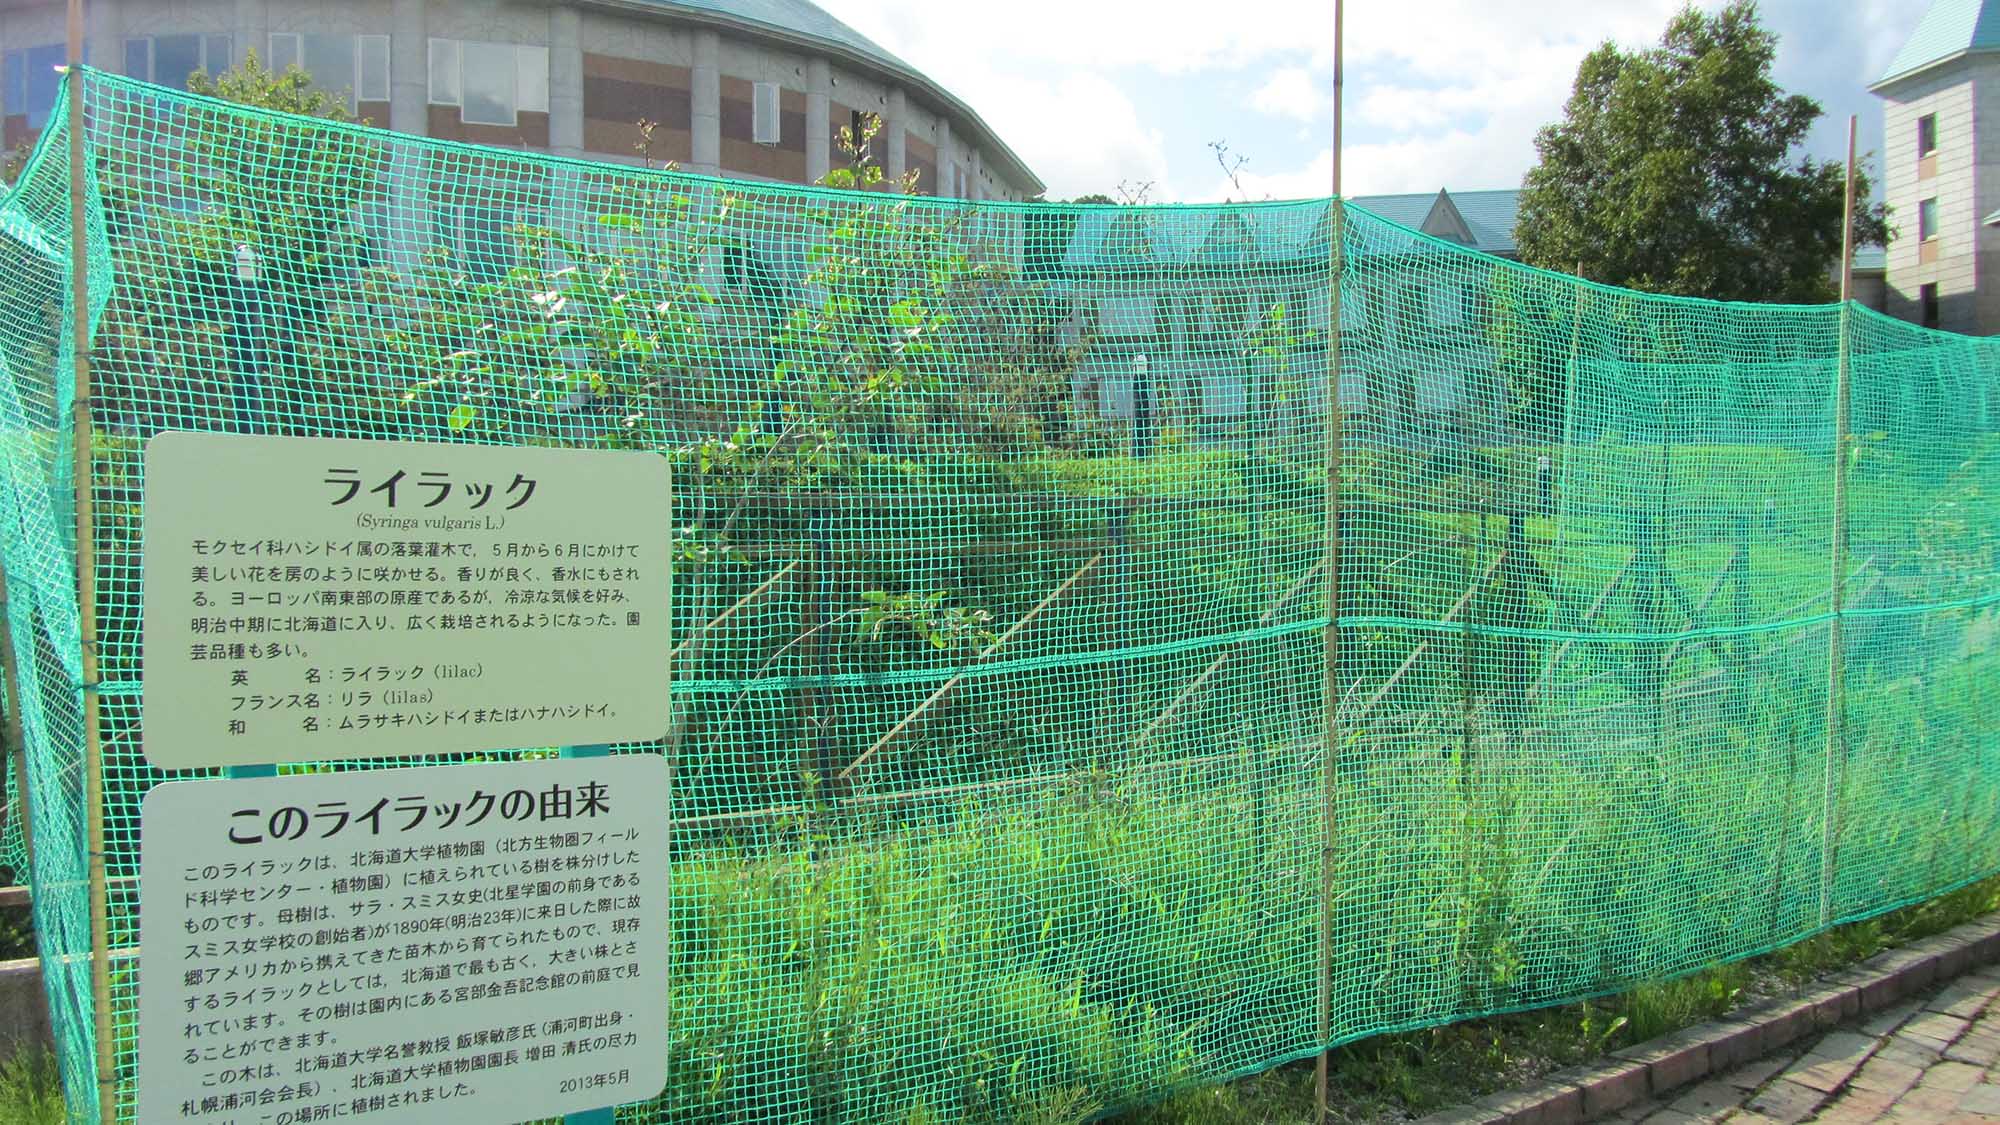 ・【ライラック】当館敷地内にあるライラックは、北海道で最も古く大きい枝とされています